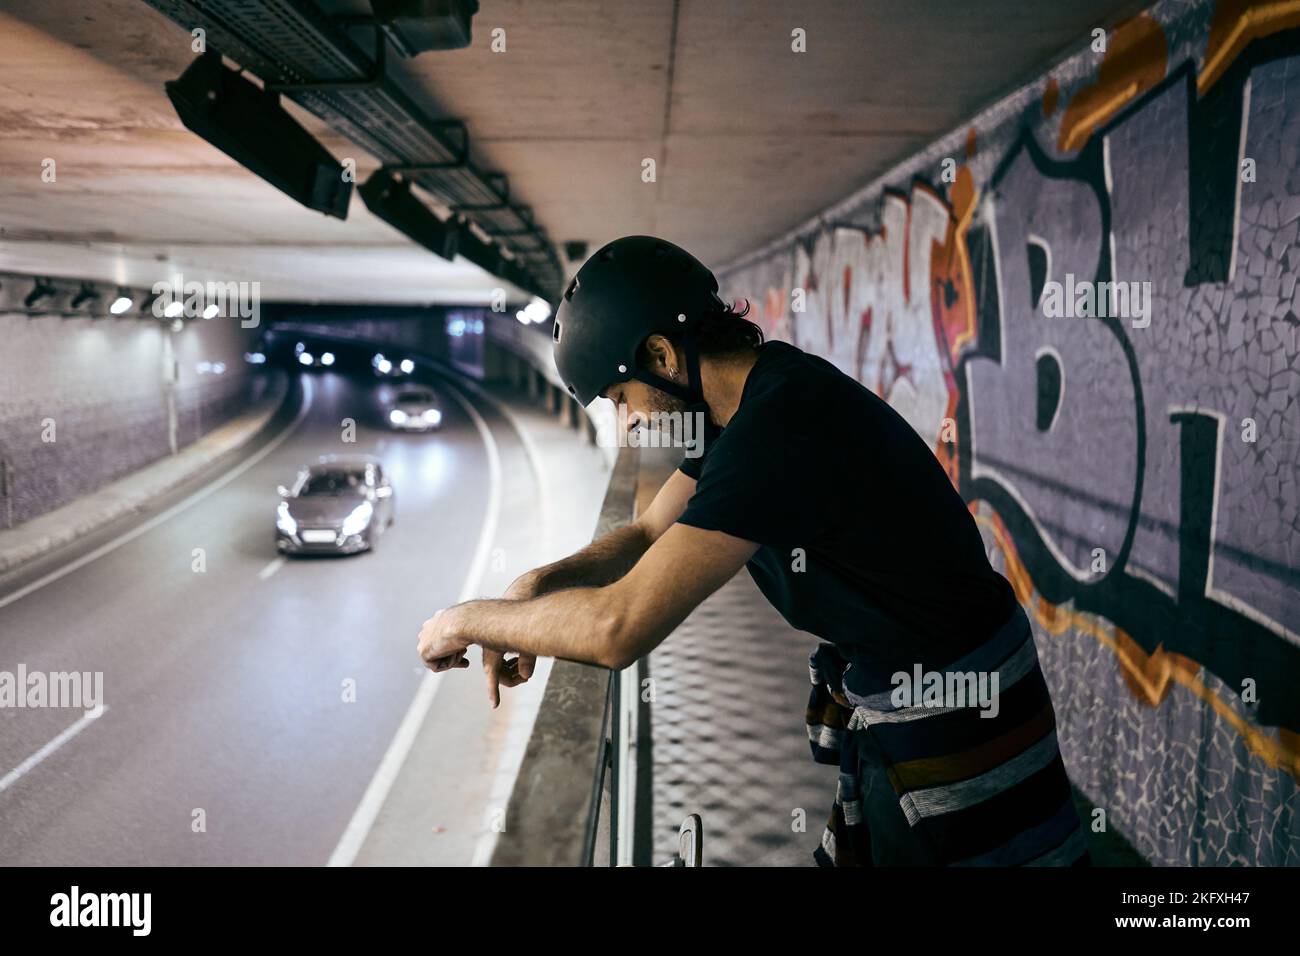 Der junge kaukasische Mann steht mit Helm auf dem Kopf und lehnt sich auf das Geländer eines Gehwegs in einem Tunnel mit viel Verkehr in der Stadt Stockfoto